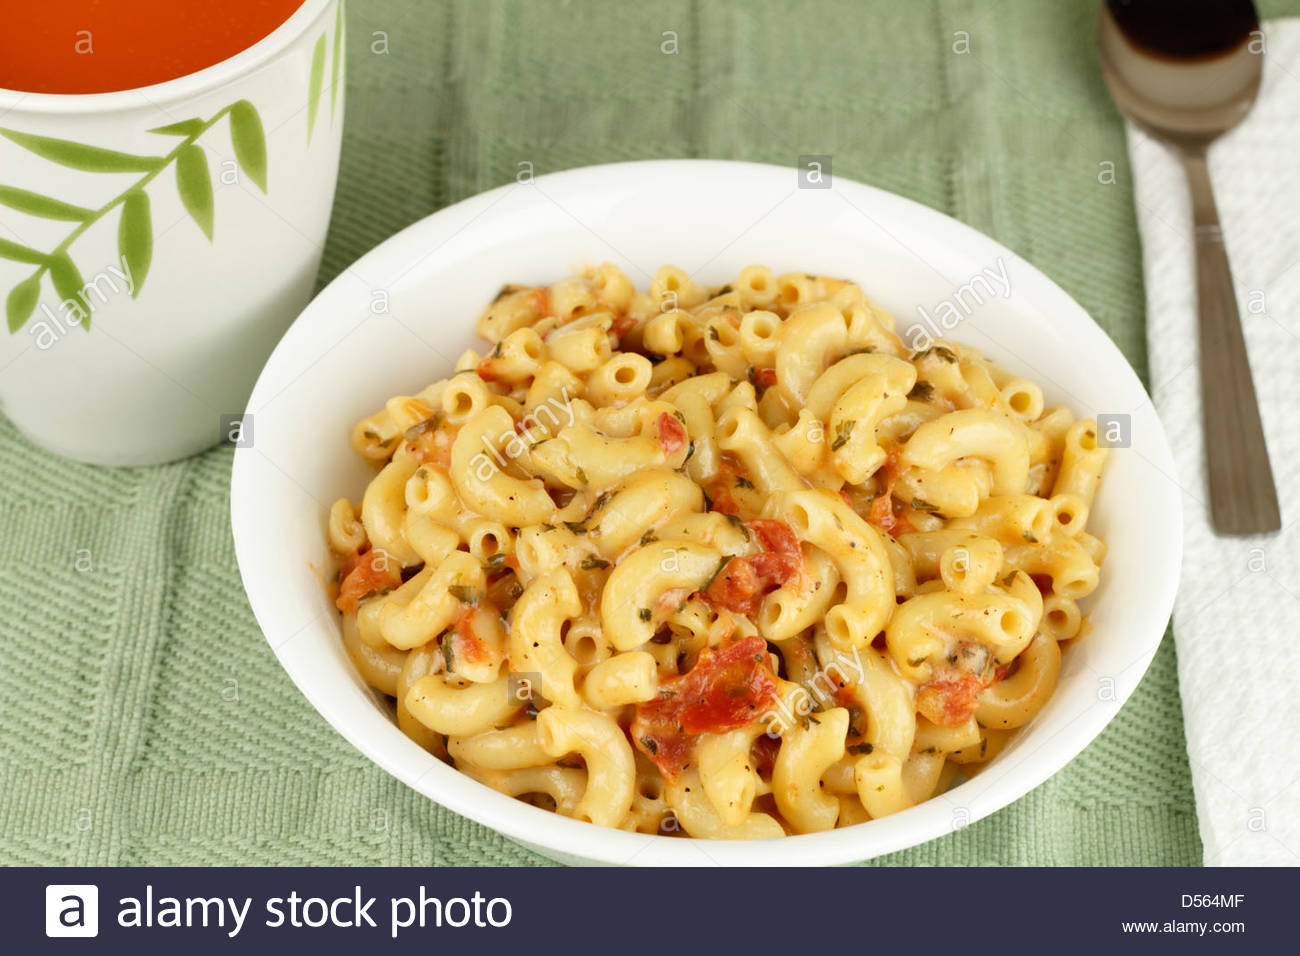 taca-branco-de-um-cotovelo-macarrao-misturado-com-queijo-parmesao-derretido-tomate-em-cubos-as-ervas-italianas-com-um-lado-de-tomate-vegetais-massas-alimenticias-com-tomates-d564mf.jpg